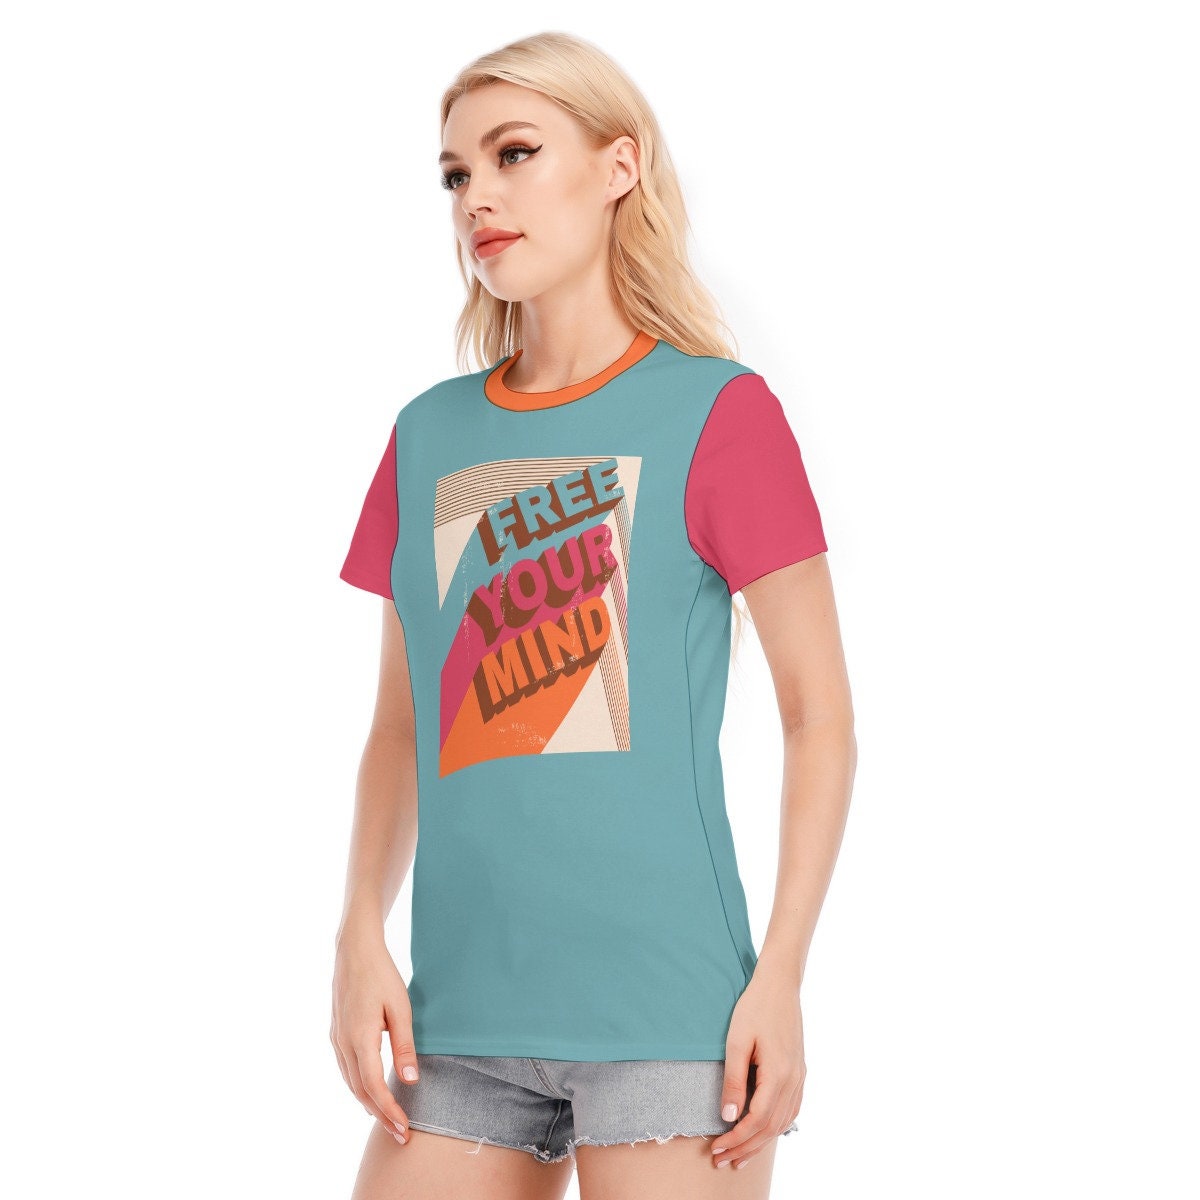 Retro-T-Shirt, T-Shirts mit Worten, Vintage-T-Shirt mit Worten, blaues T-Shirt mit Worten, Hippie-T-Shirt für Damen, blaugrünes T-Shirt im Vintage-Stil, einzigartiges T-Shirt